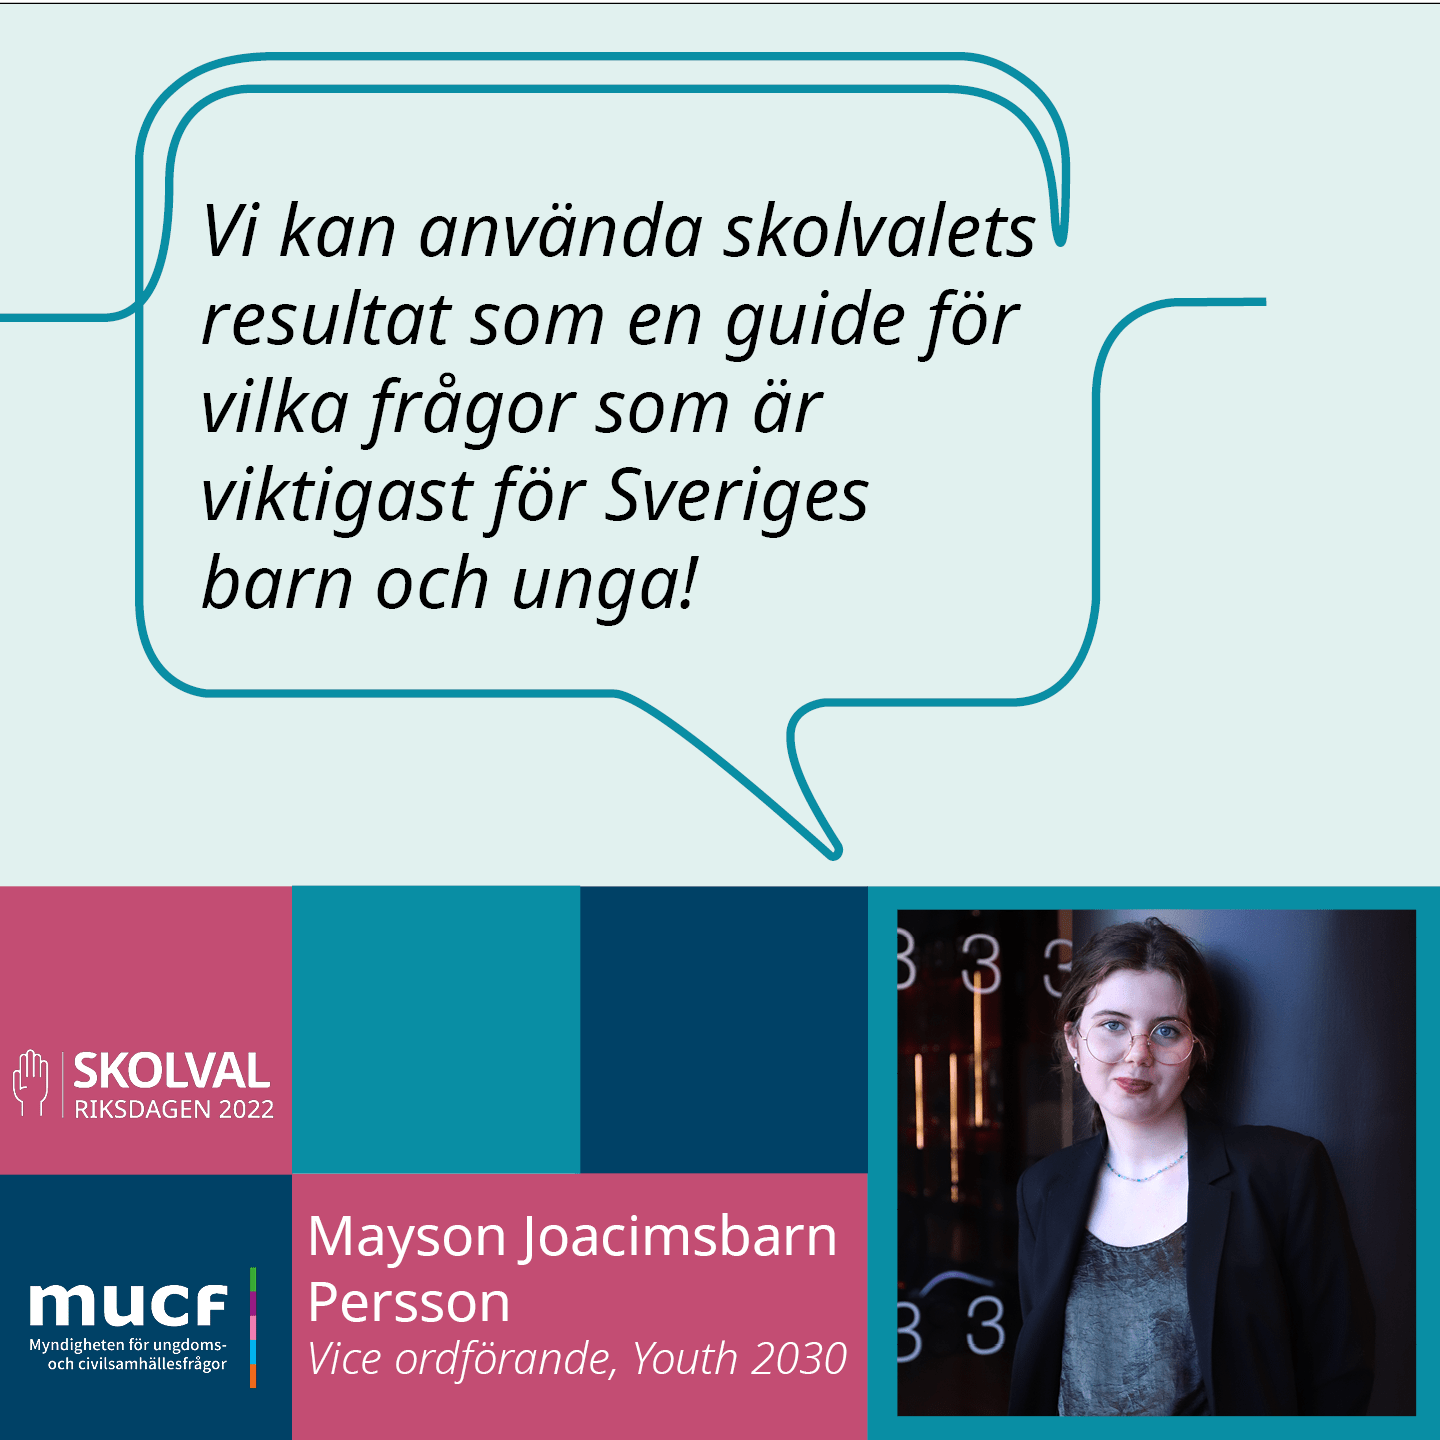 Mayson Joacimsbarn Persson med citatet Vi kan använda skolvalets resultat som en guide för vilka frågor som är viktigast för Sveriges barn och unga!